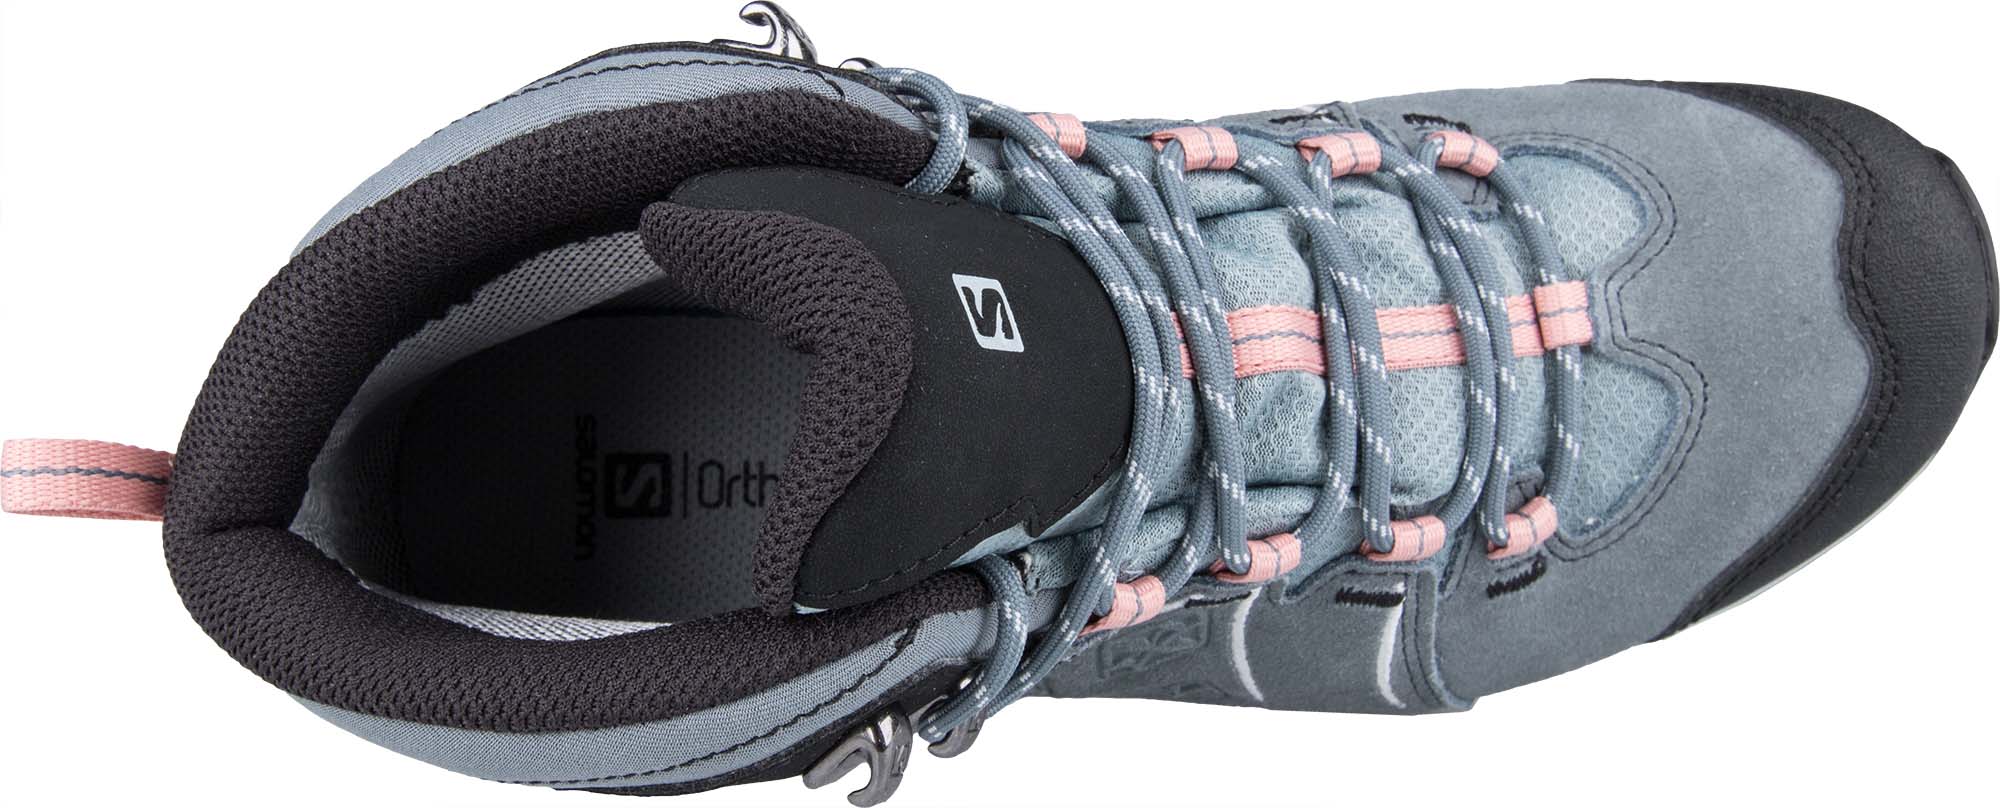 Women’s hiking shoes